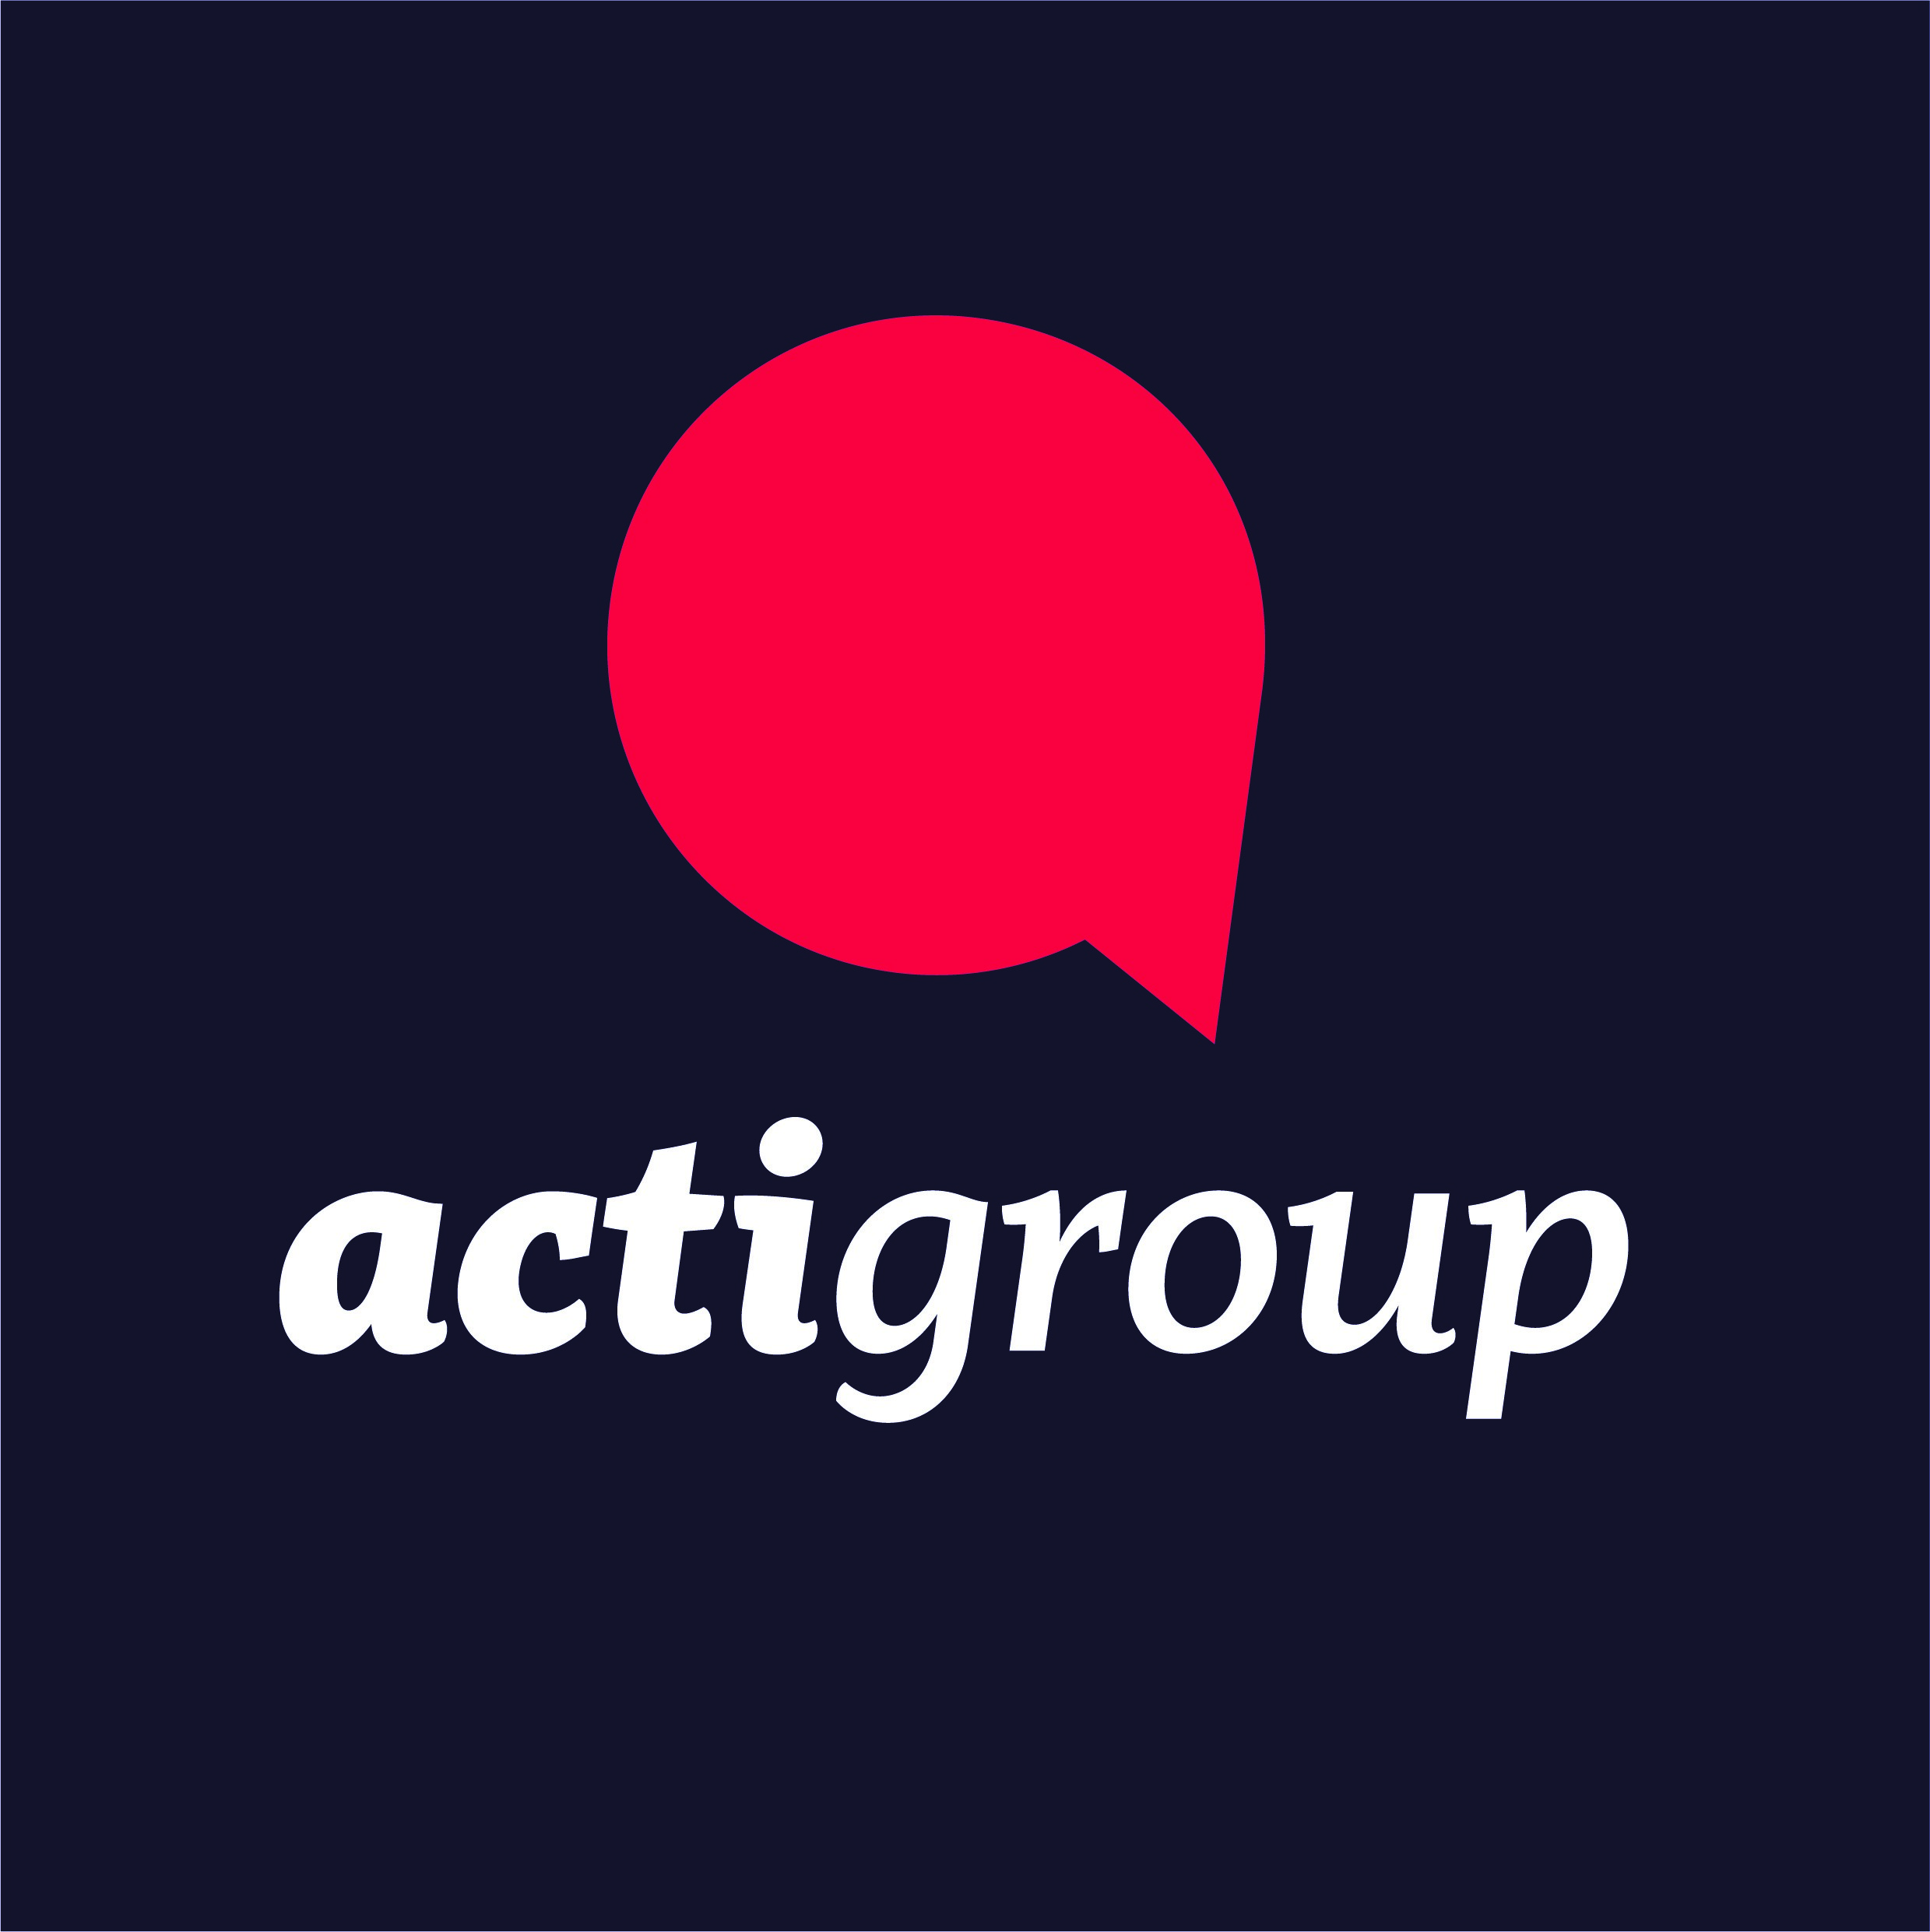 Acti Group logo